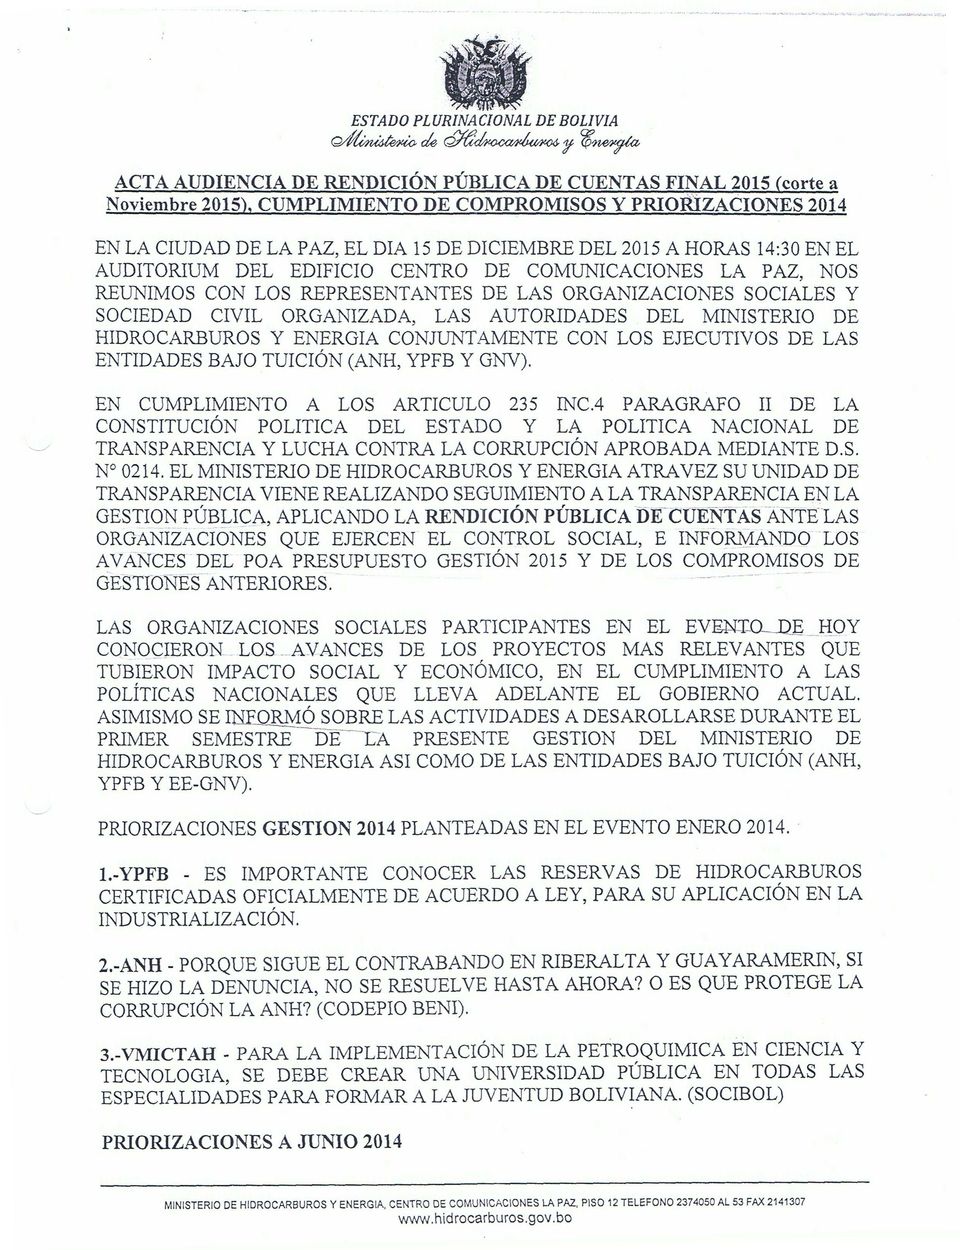 MINISTERIO DE HIDROCARBUROS Y ENERGIA CONJUNTAMENTE CON LOS EJECUTIVOS DE LAS ENTIDADES BAJO TUICIÓN (ANH, YPFB Y GNV).